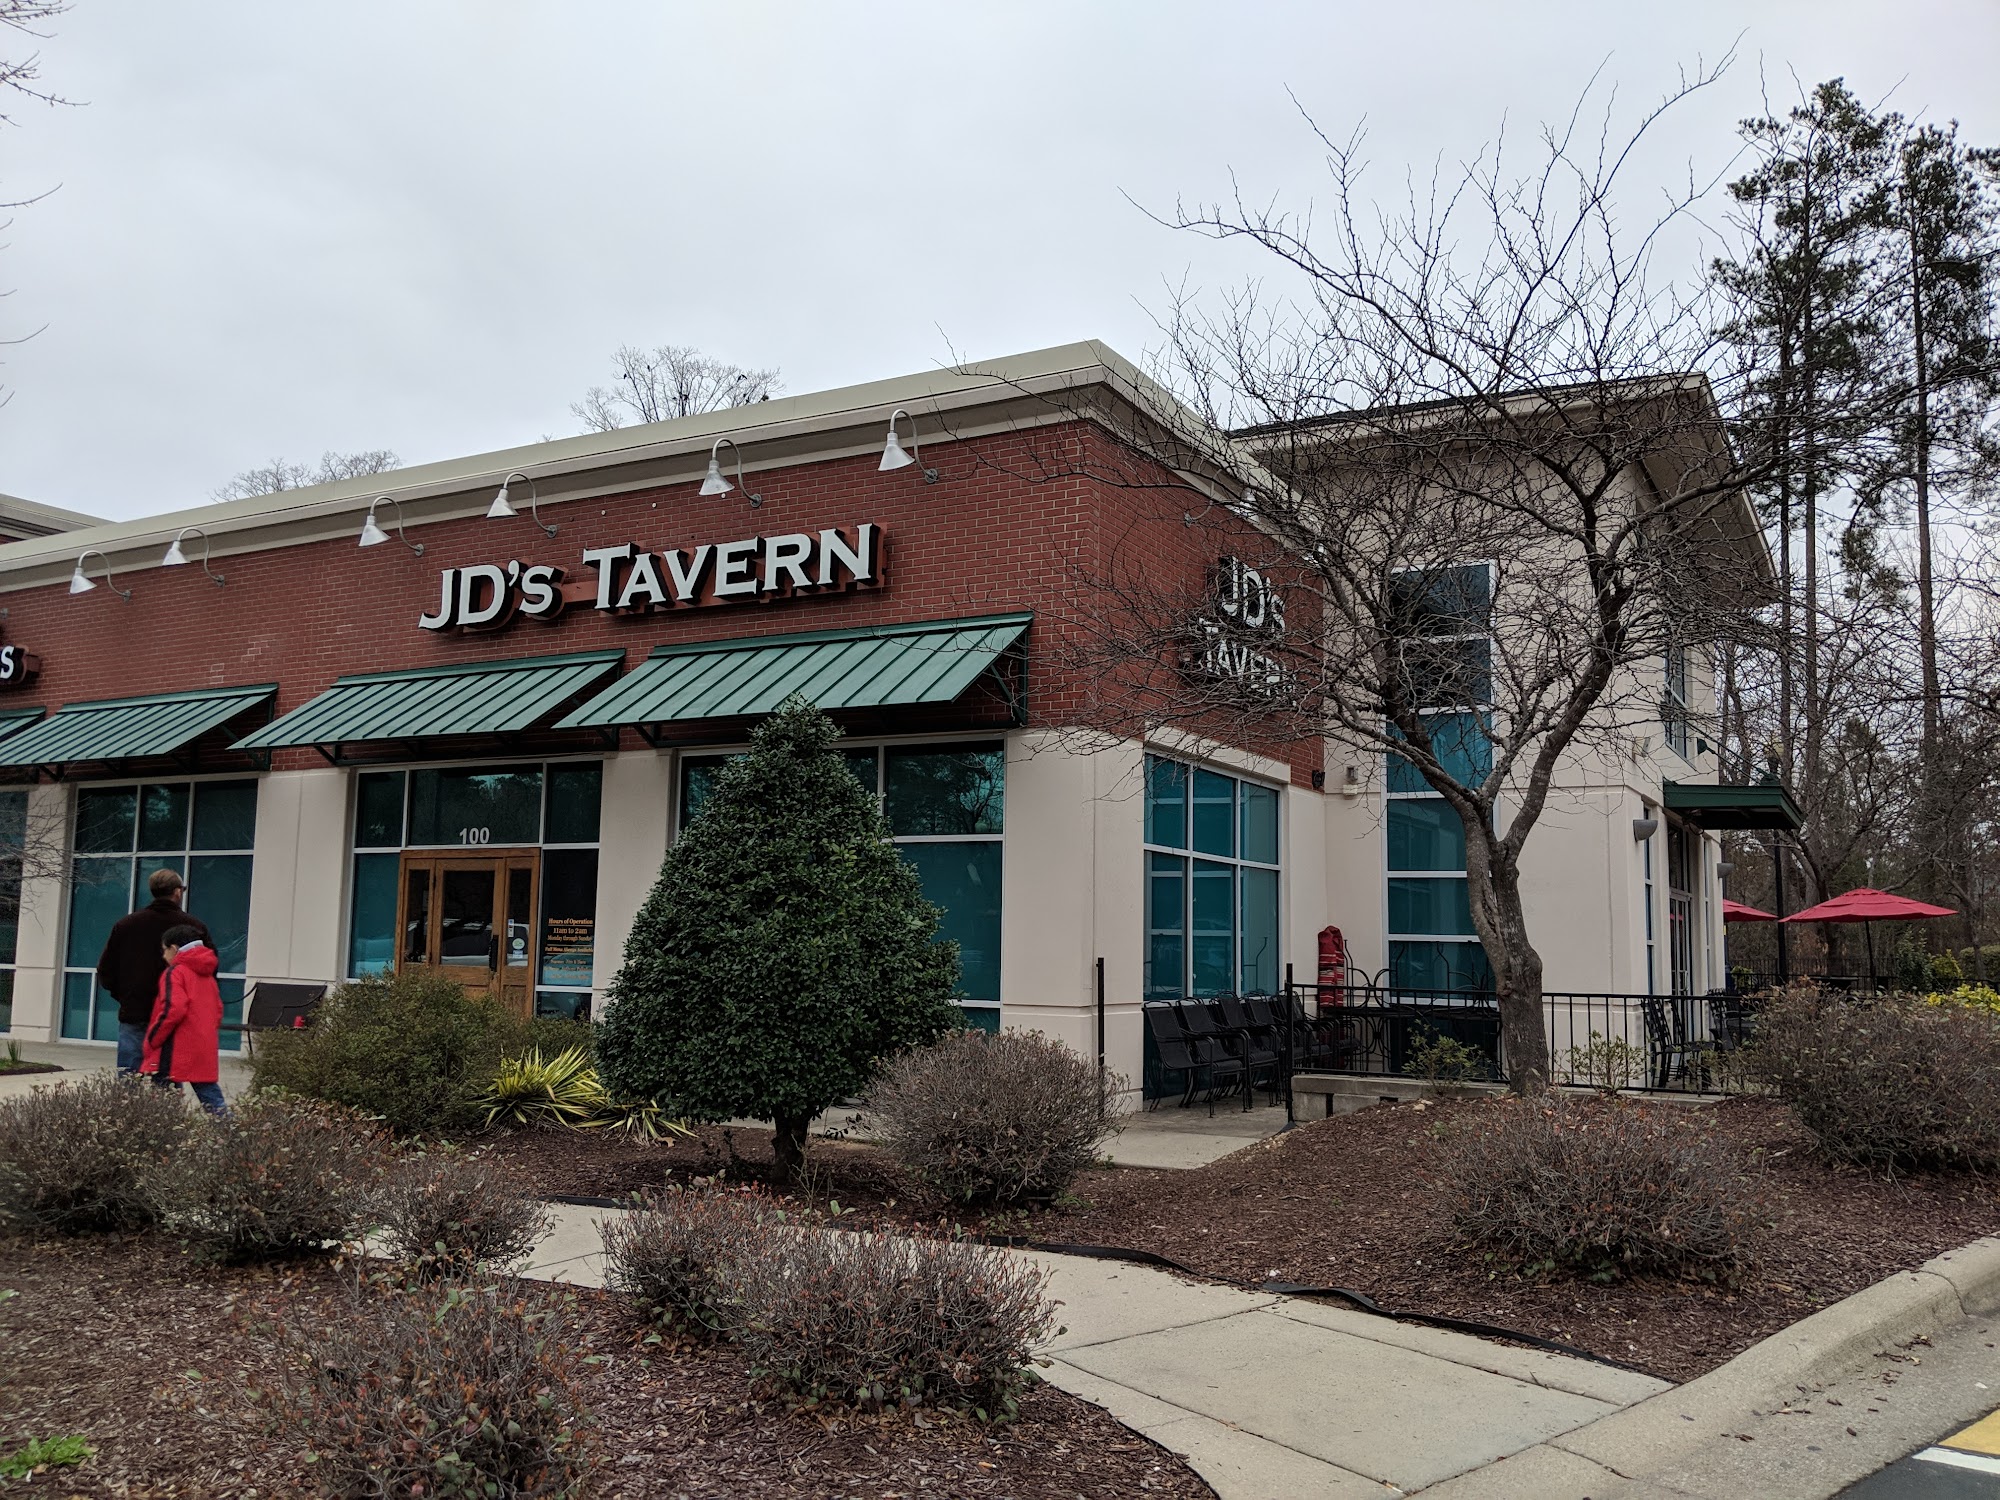 JD's Tavern